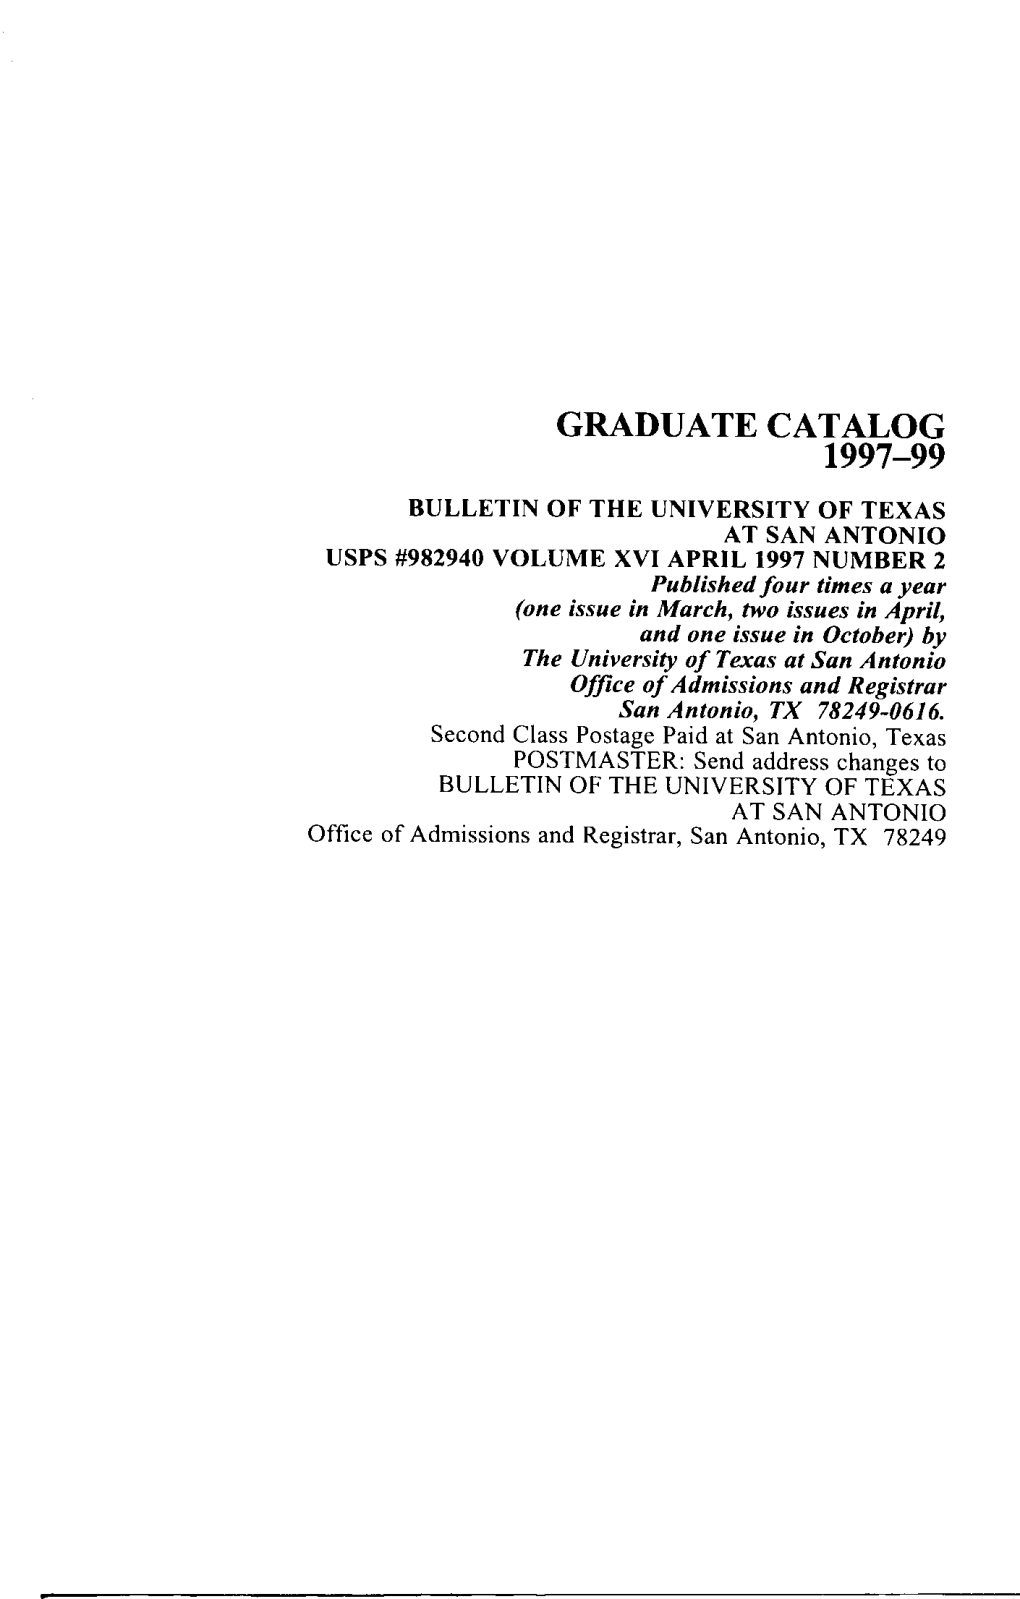 UTSA 1997-1999 Graduate Catalog